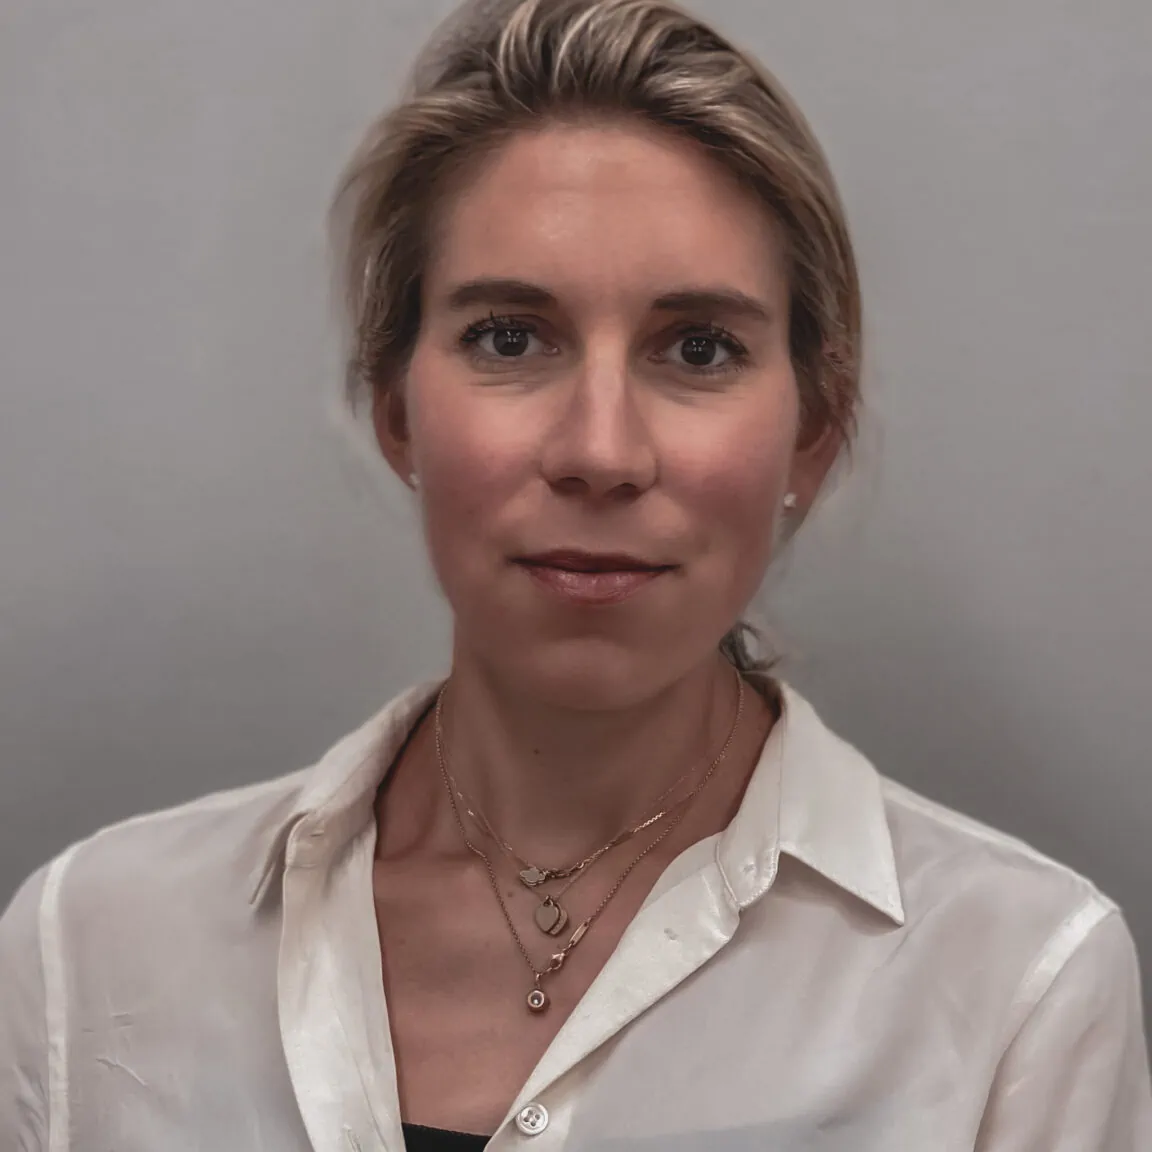 Dr. Simone Schwank